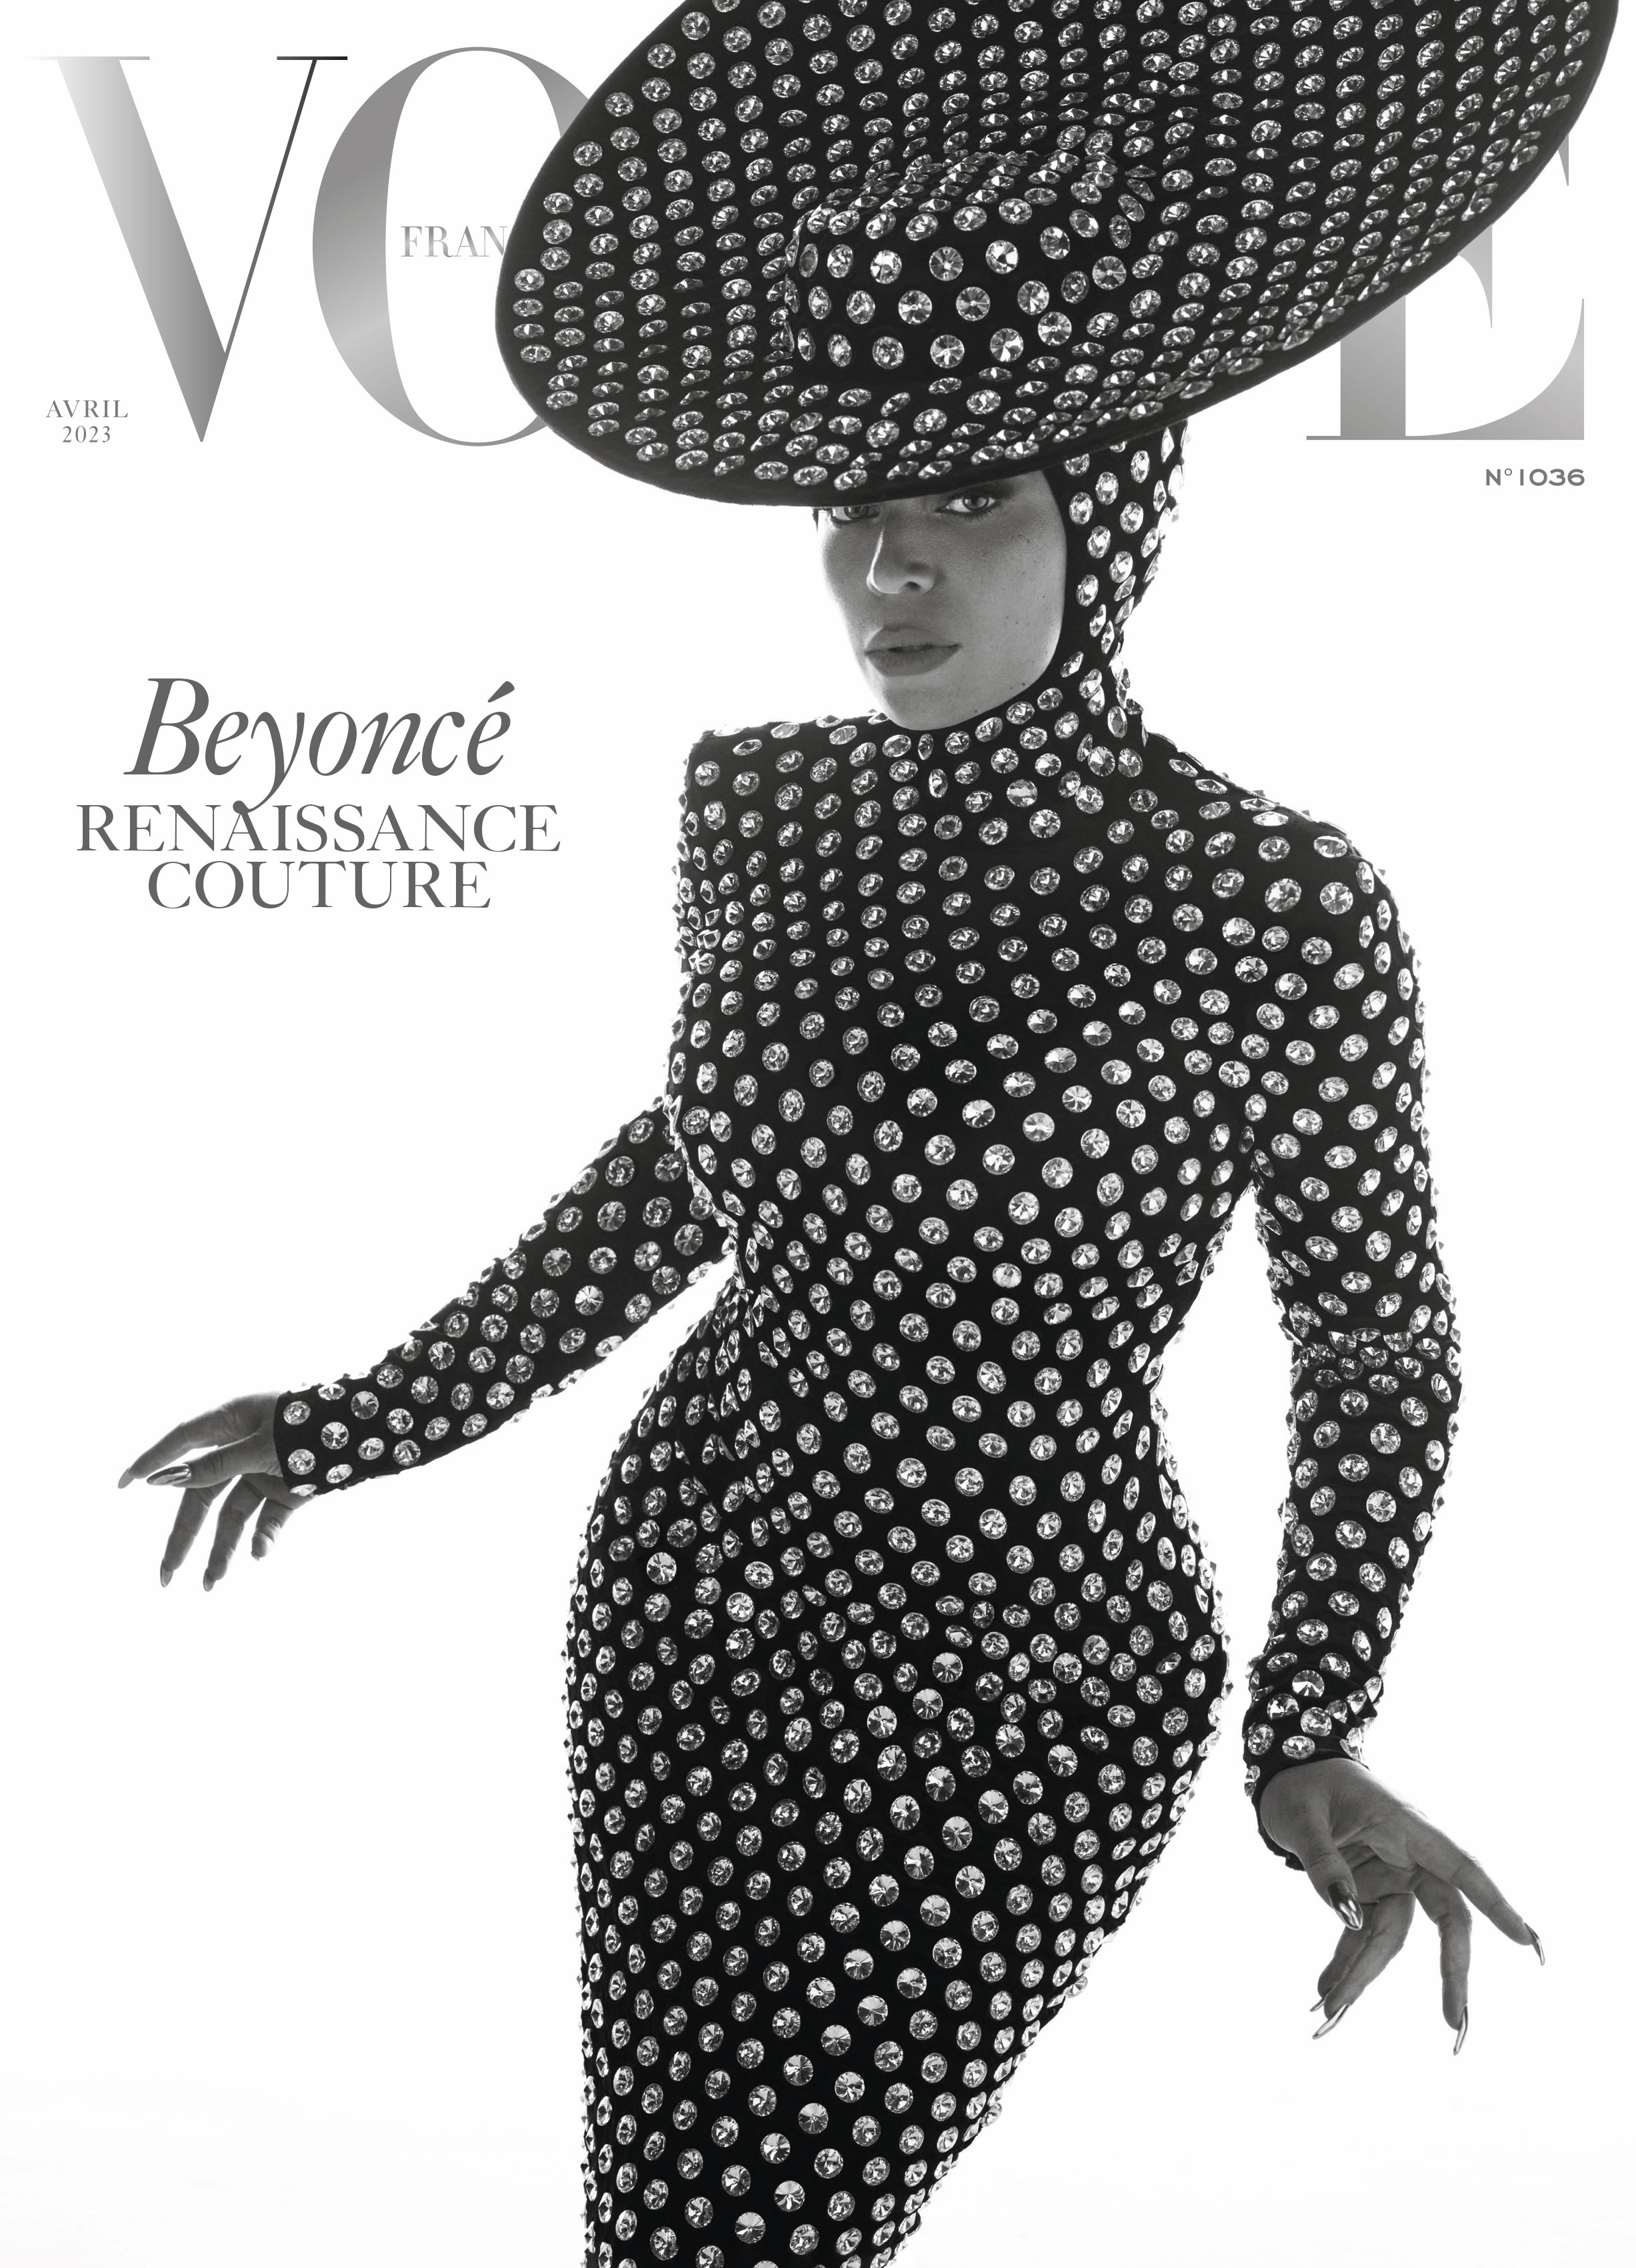 BeyHive Blessings Beyoncé & Balmain Announce ‘Renaissance Couture